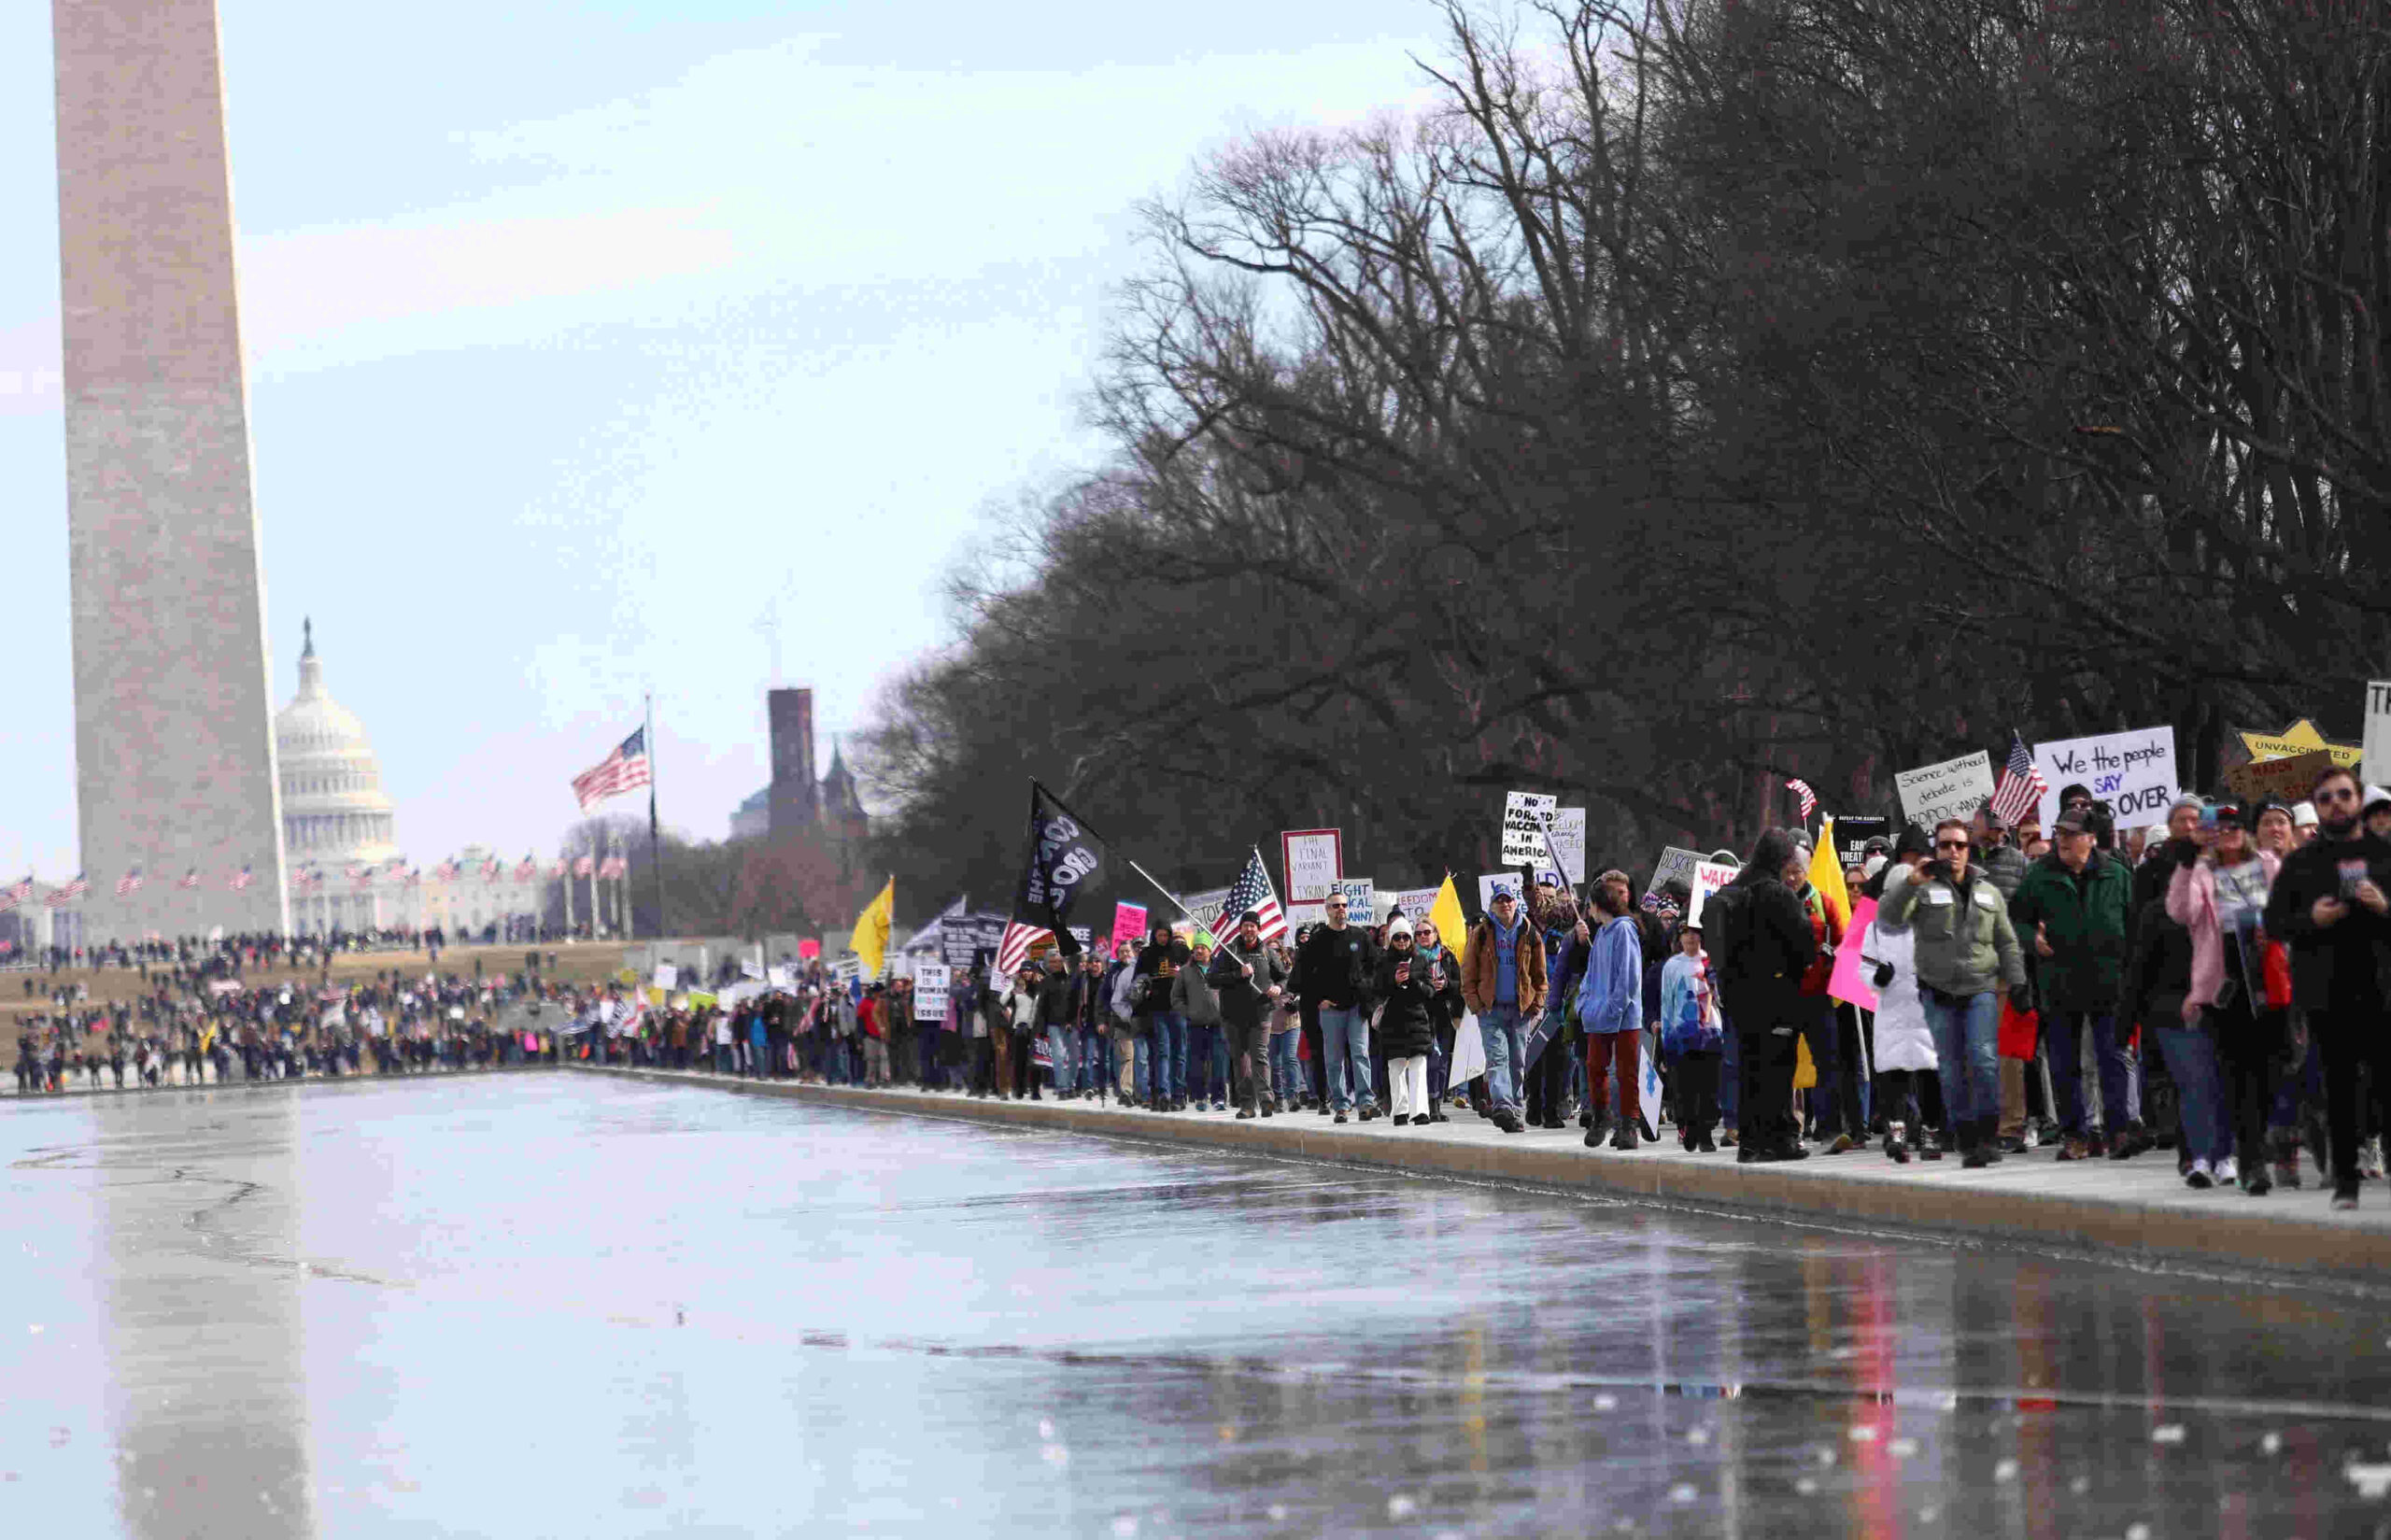 La manifestazione di oggi a Washington DC contro l'obbligo vaccinale